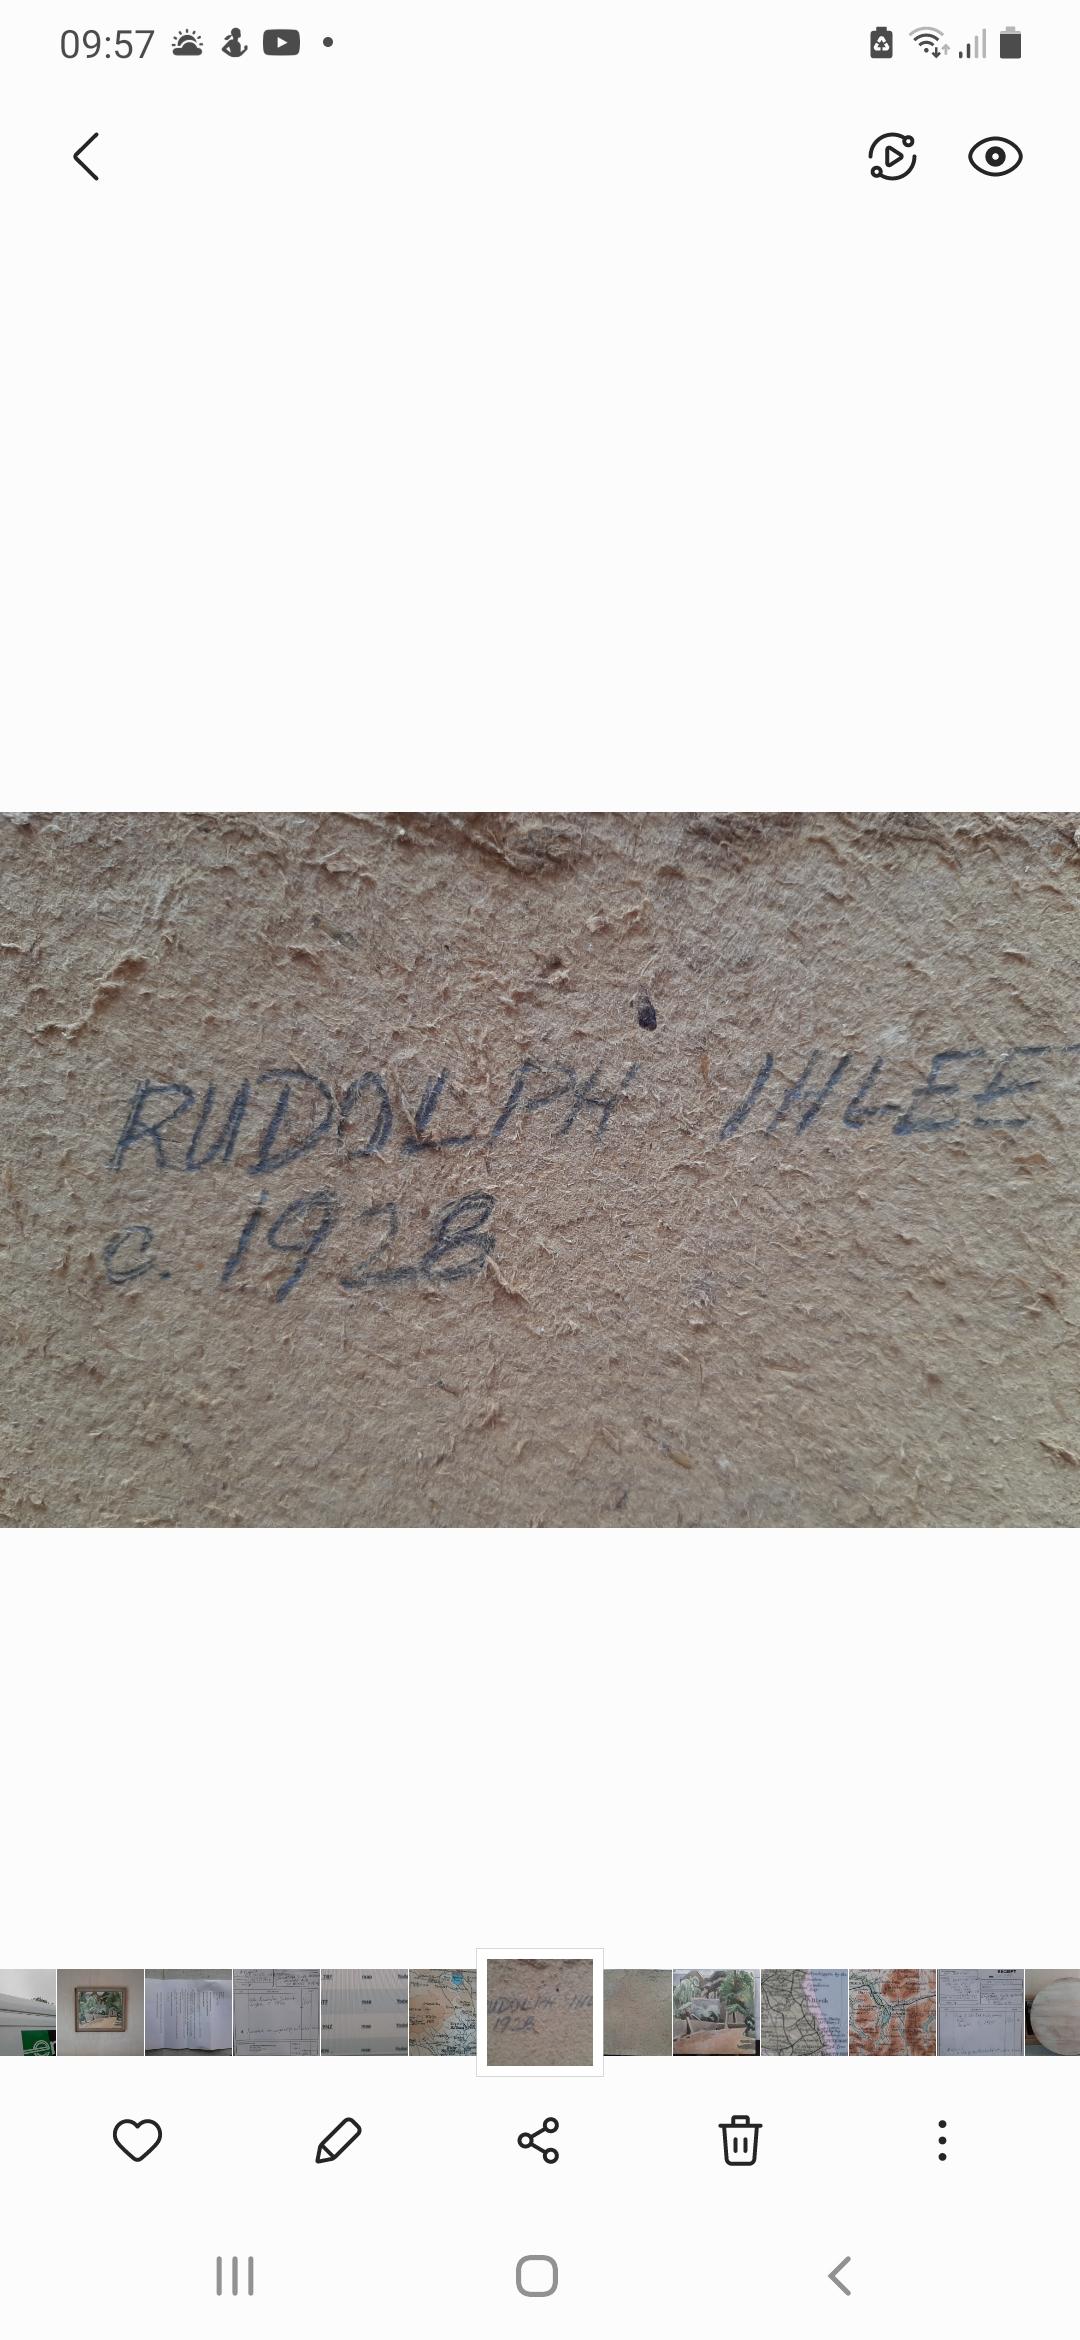 Peint Collioure, sud de la France. Rudolph Ihlee (NEAC) 1928 en vente